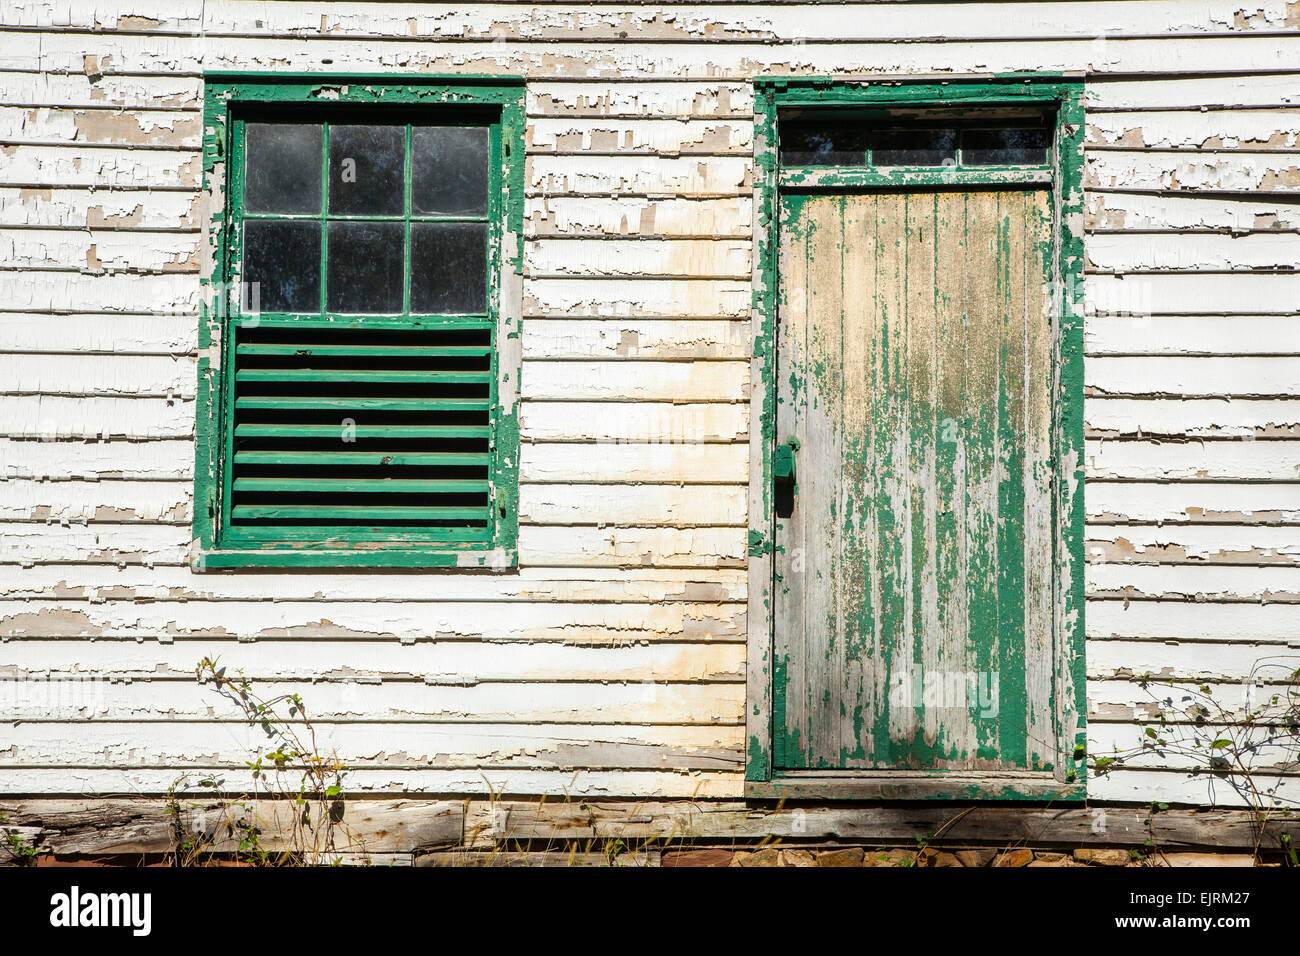 Architektonische Details zeigen, abblätternde Farbe und eine alte Fenster und Tür Stockfoto